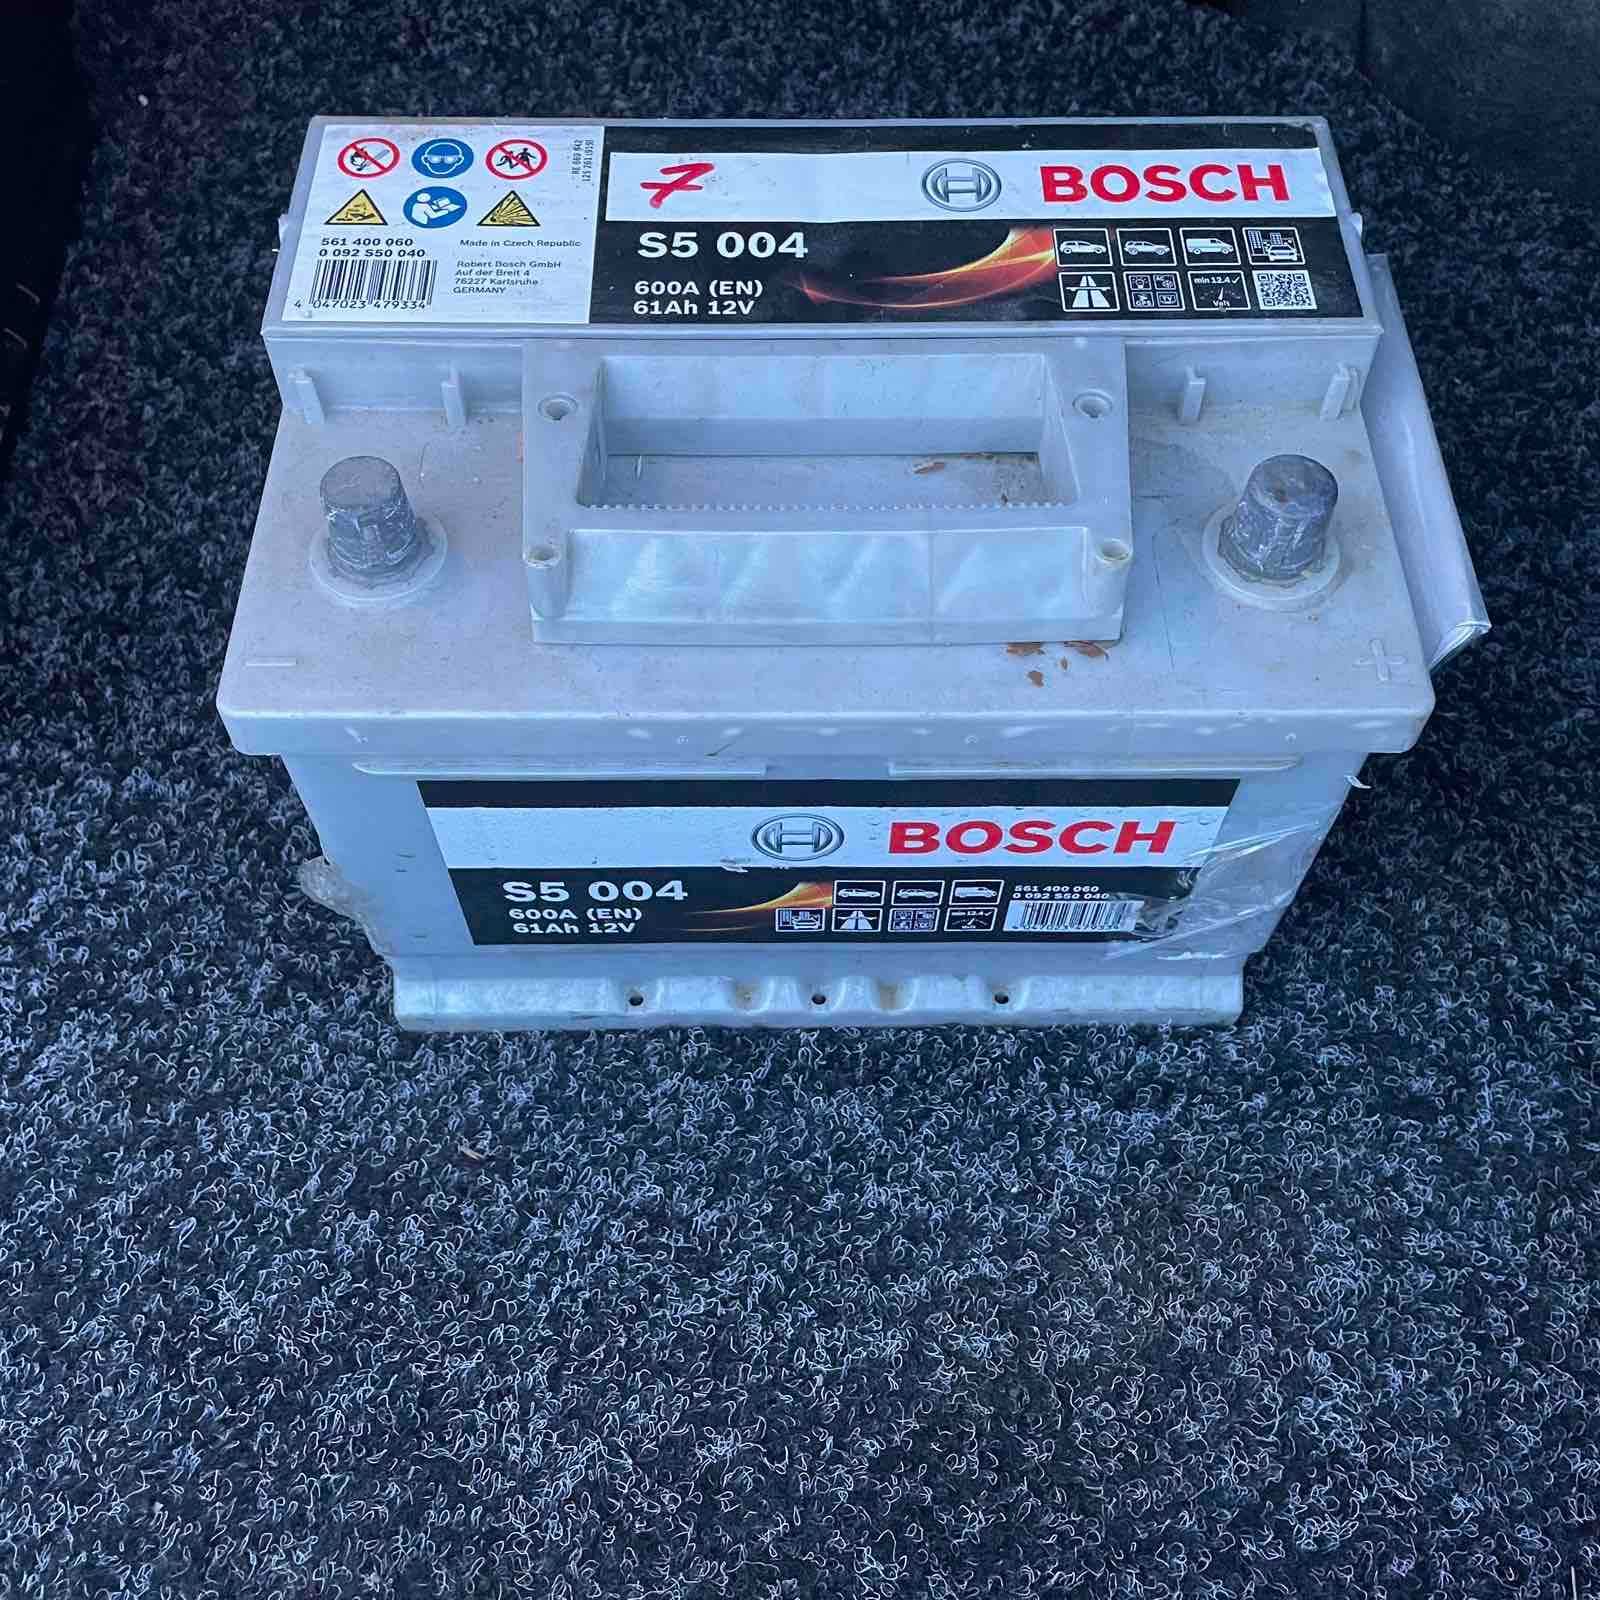 Акумулятор свинцево-кислотний Bosch 61Ah 12V S5 004 - відмінний стан